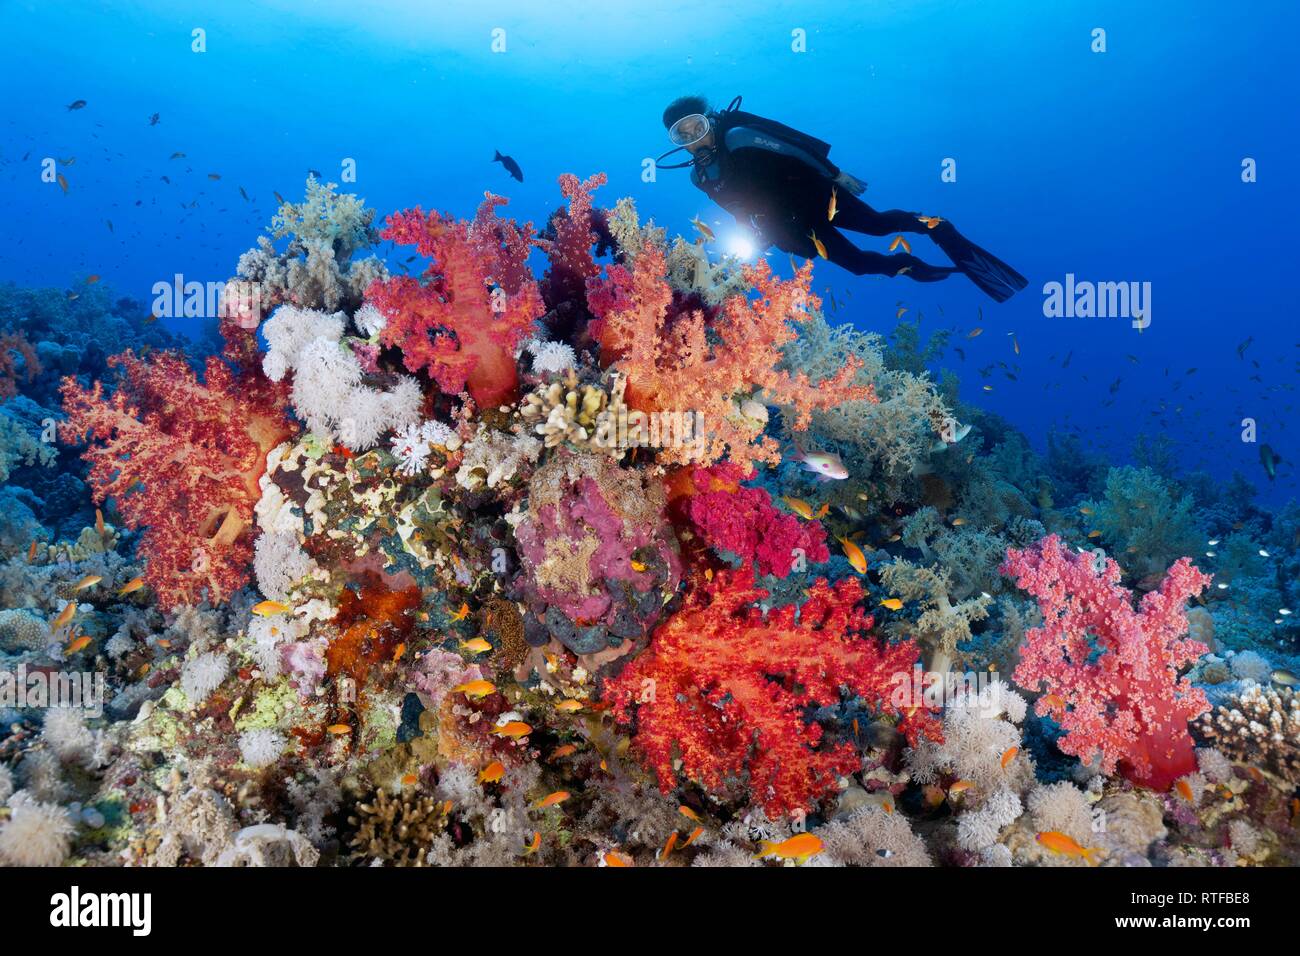 Taucher mit Lampe suchen im Coral Reef, dicht bewachsen mit Weichkorallen (alcyonacea), Steinkorallen (Hexacorallia) Stockfoto